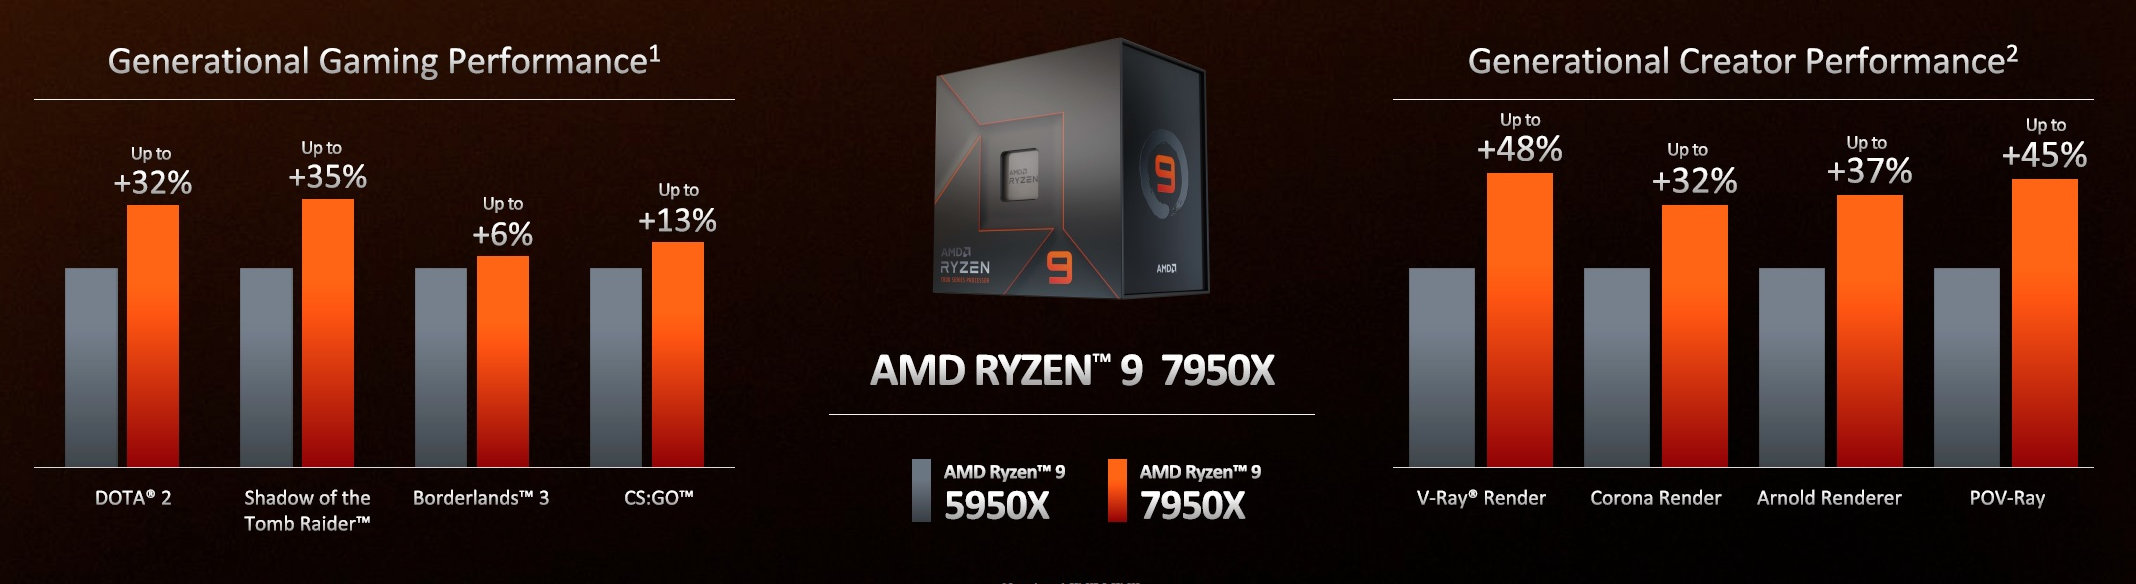 ارتقاء عملکرد پرچمدار سری AMD Ryzen 7000 در گیمینگ و تولید محتوا